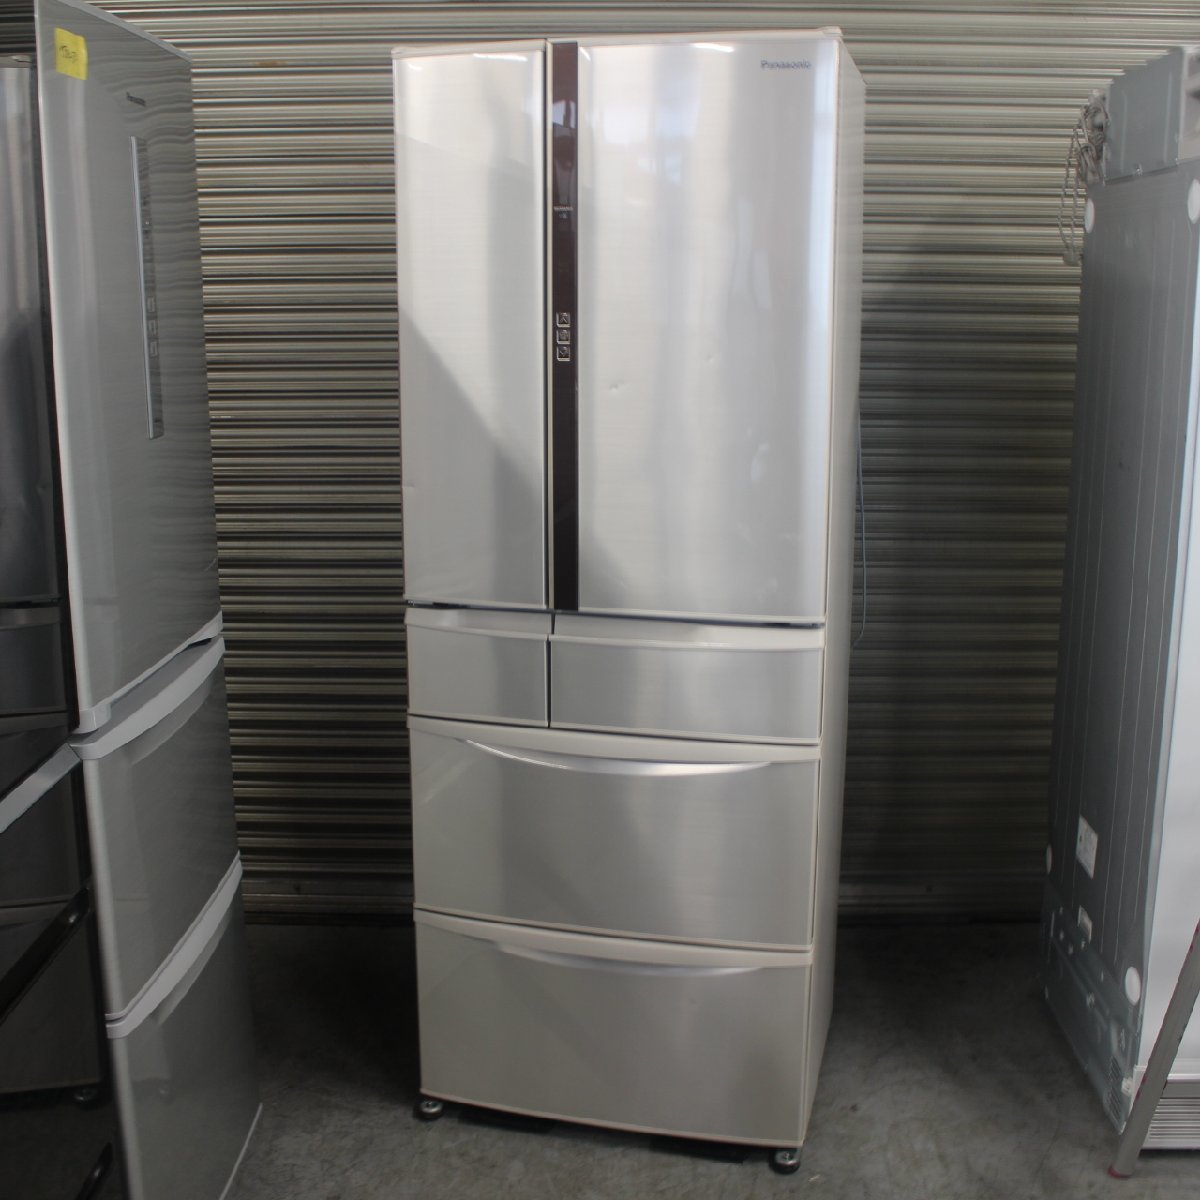 東京都大田区にて パナソニック ノンフロン冷凍冷蔵庫 NR-F461V-N 2015年製 を出張買取させて頂きました。